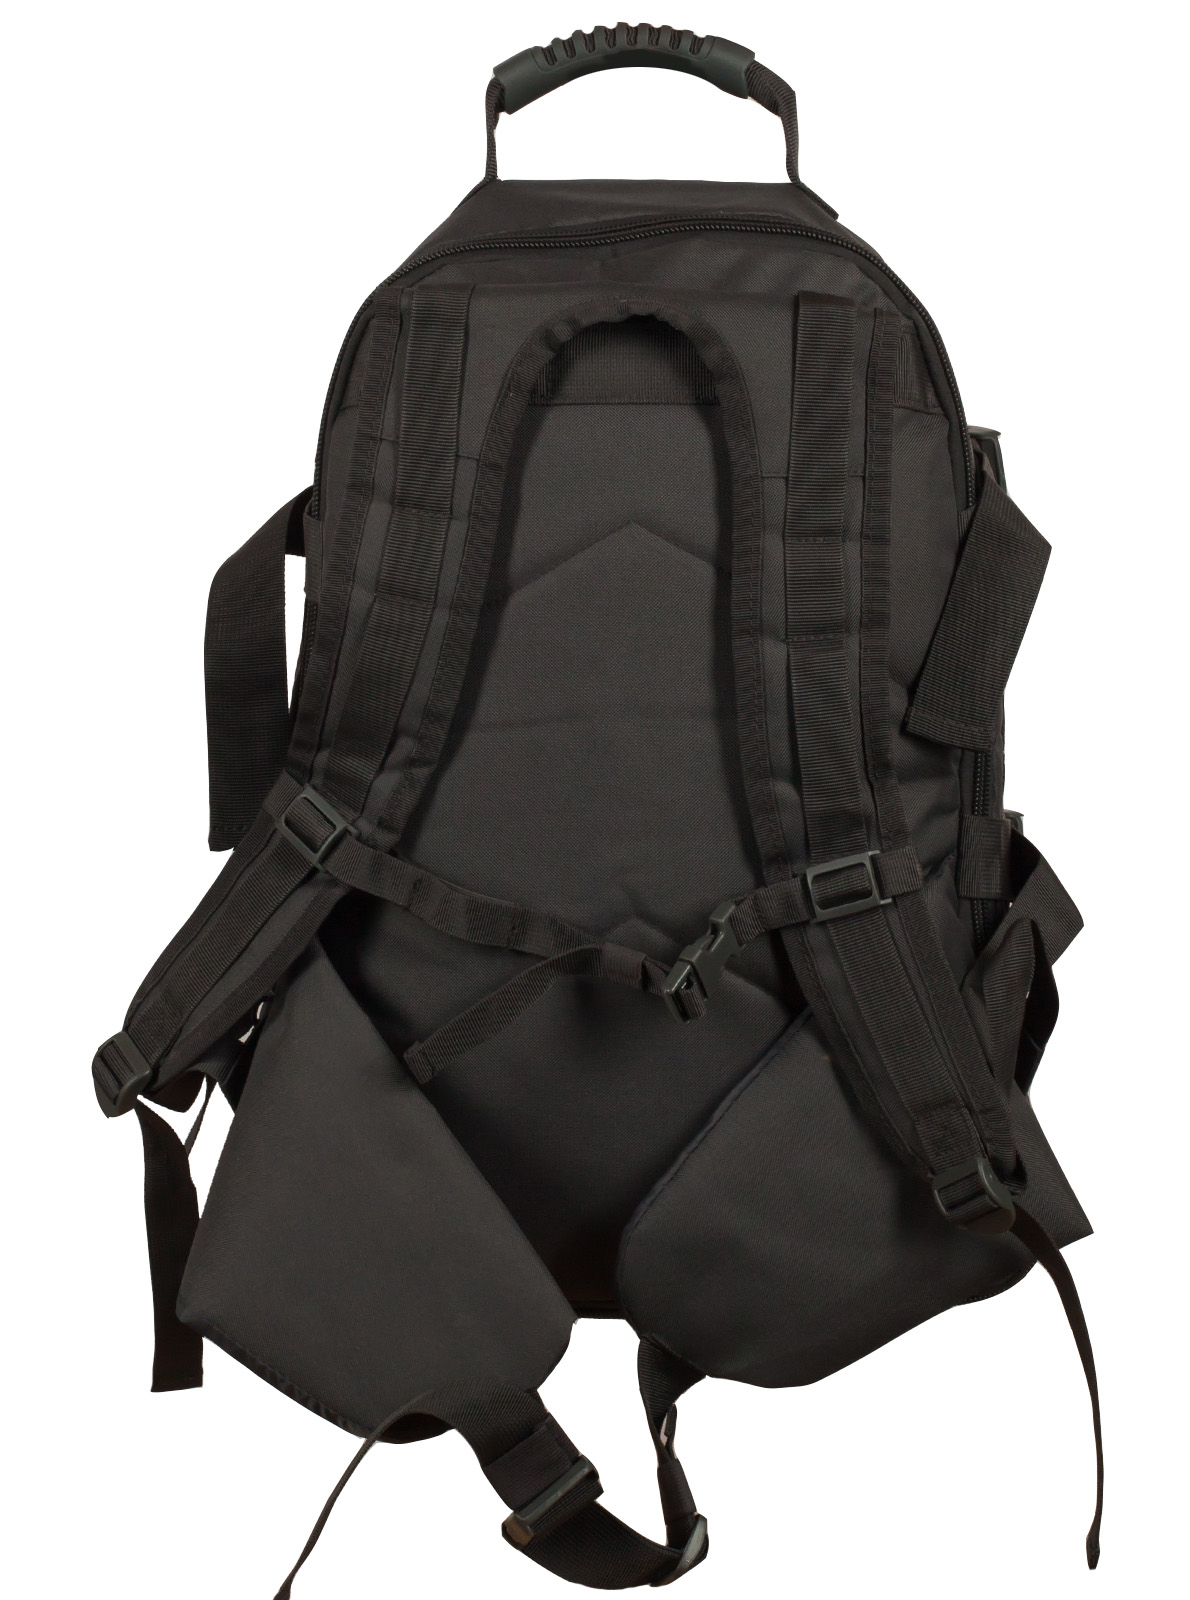 Универсальный рюкзак для города и полевых выходов 3-Day Expandable Backpack 08002A Dark Grey с эмблемой СССР 